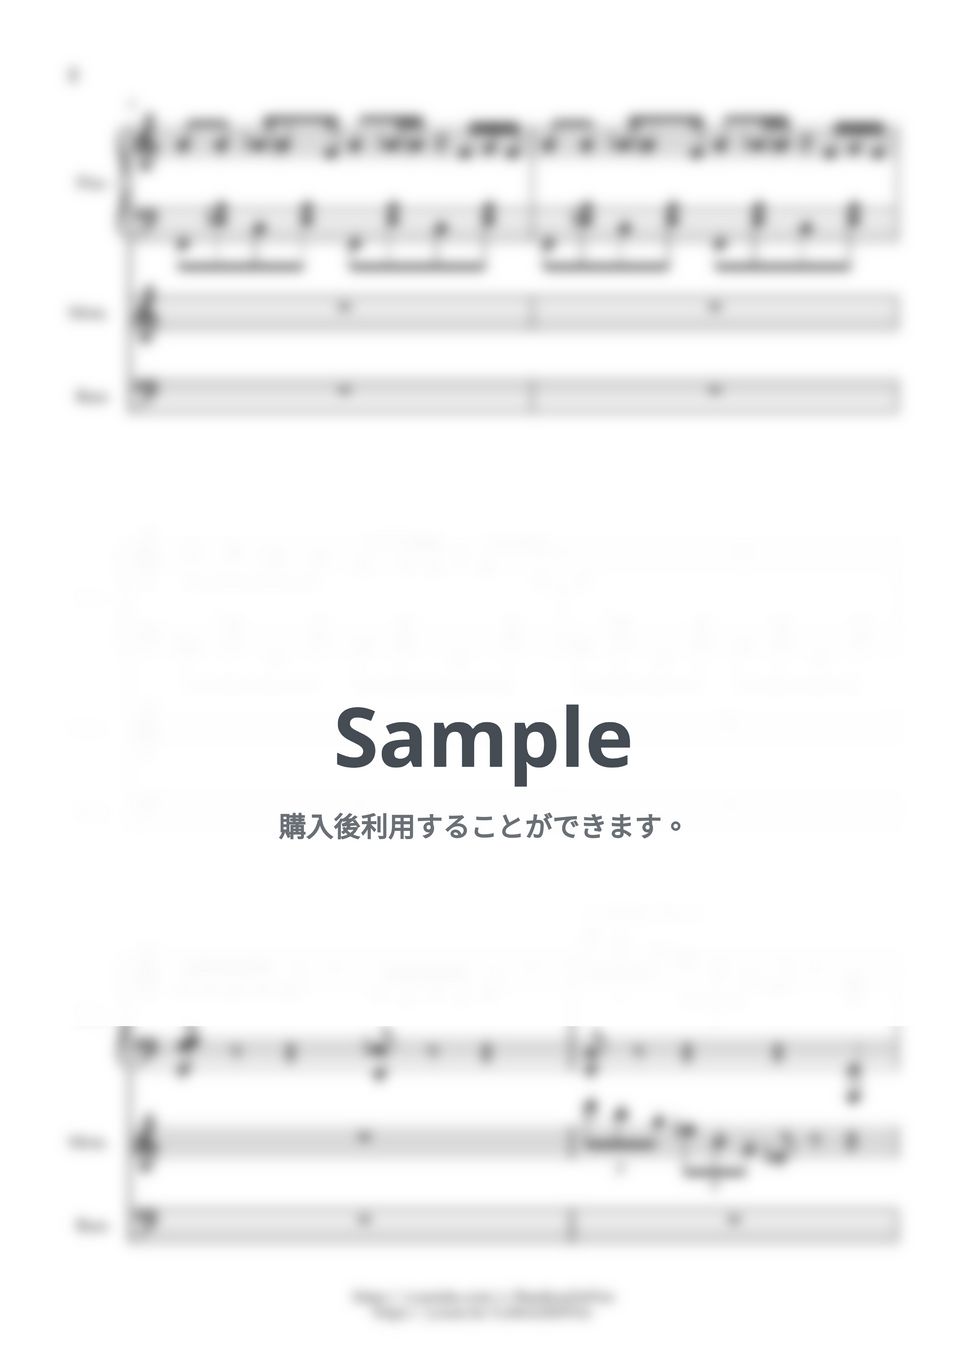 ミツキヨ - 16時の一人旅 (from 夢箱) by BambooOnFire's Music Lab